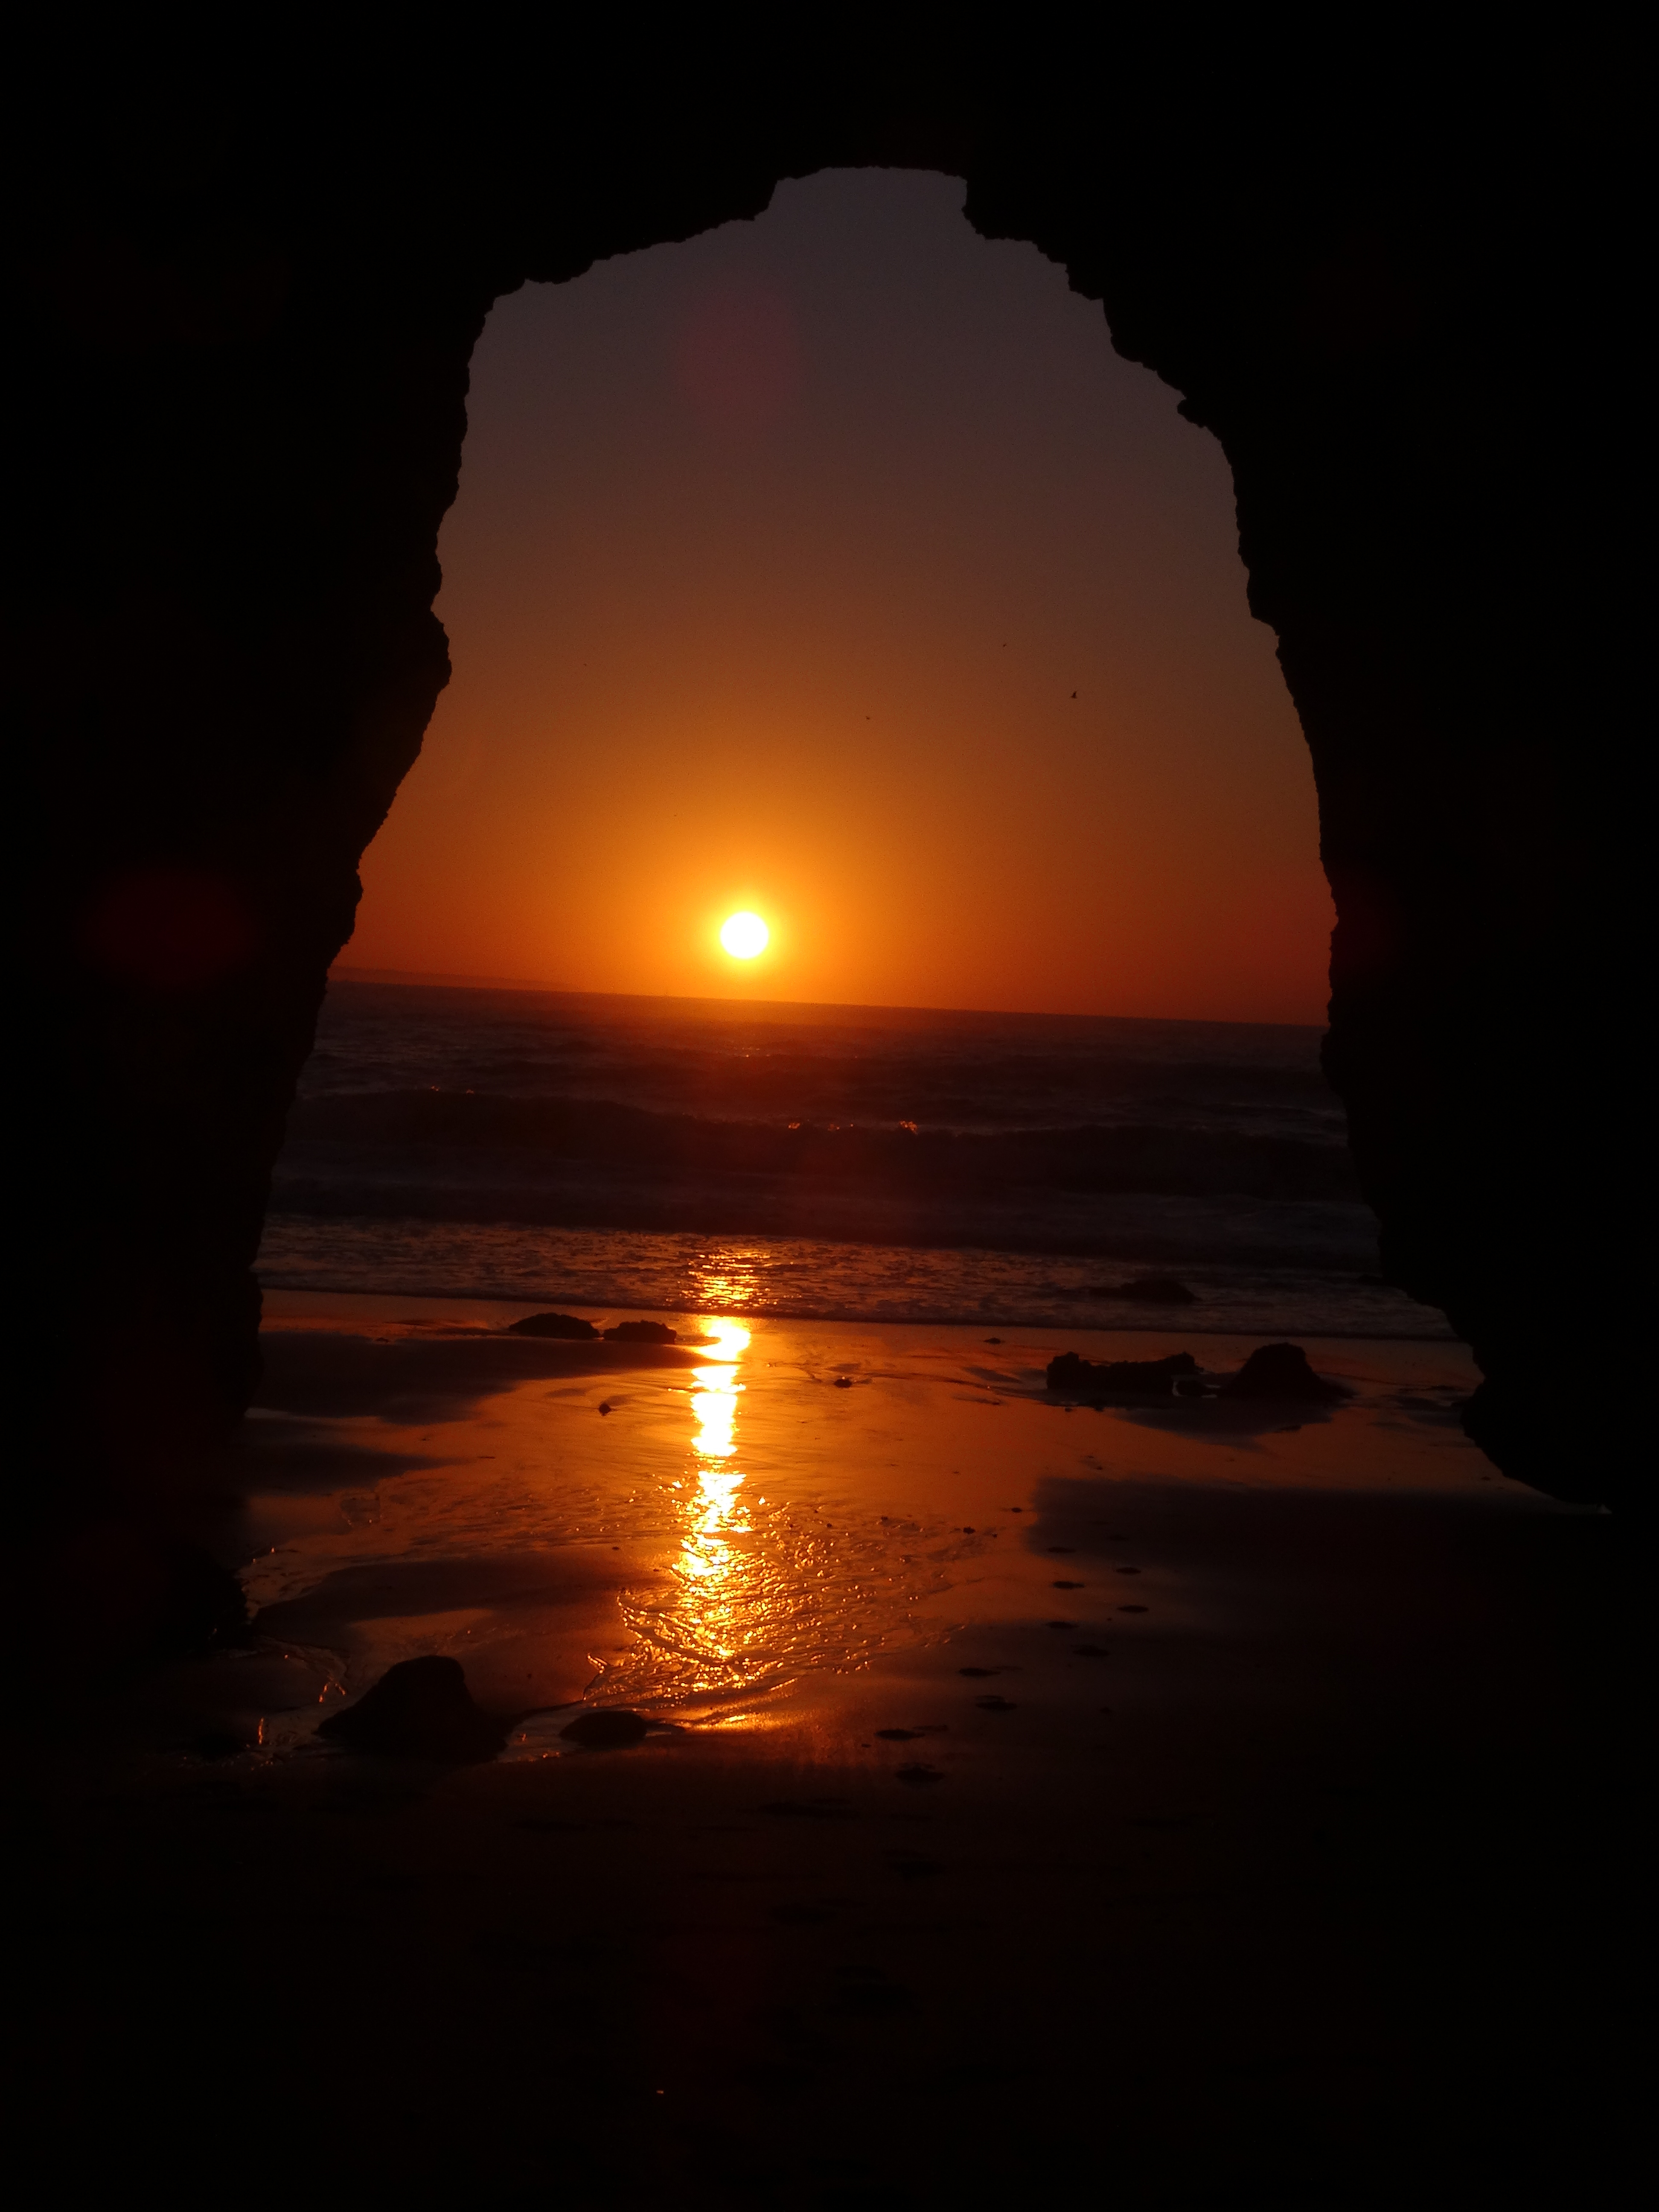 Sunrise in the Algarve